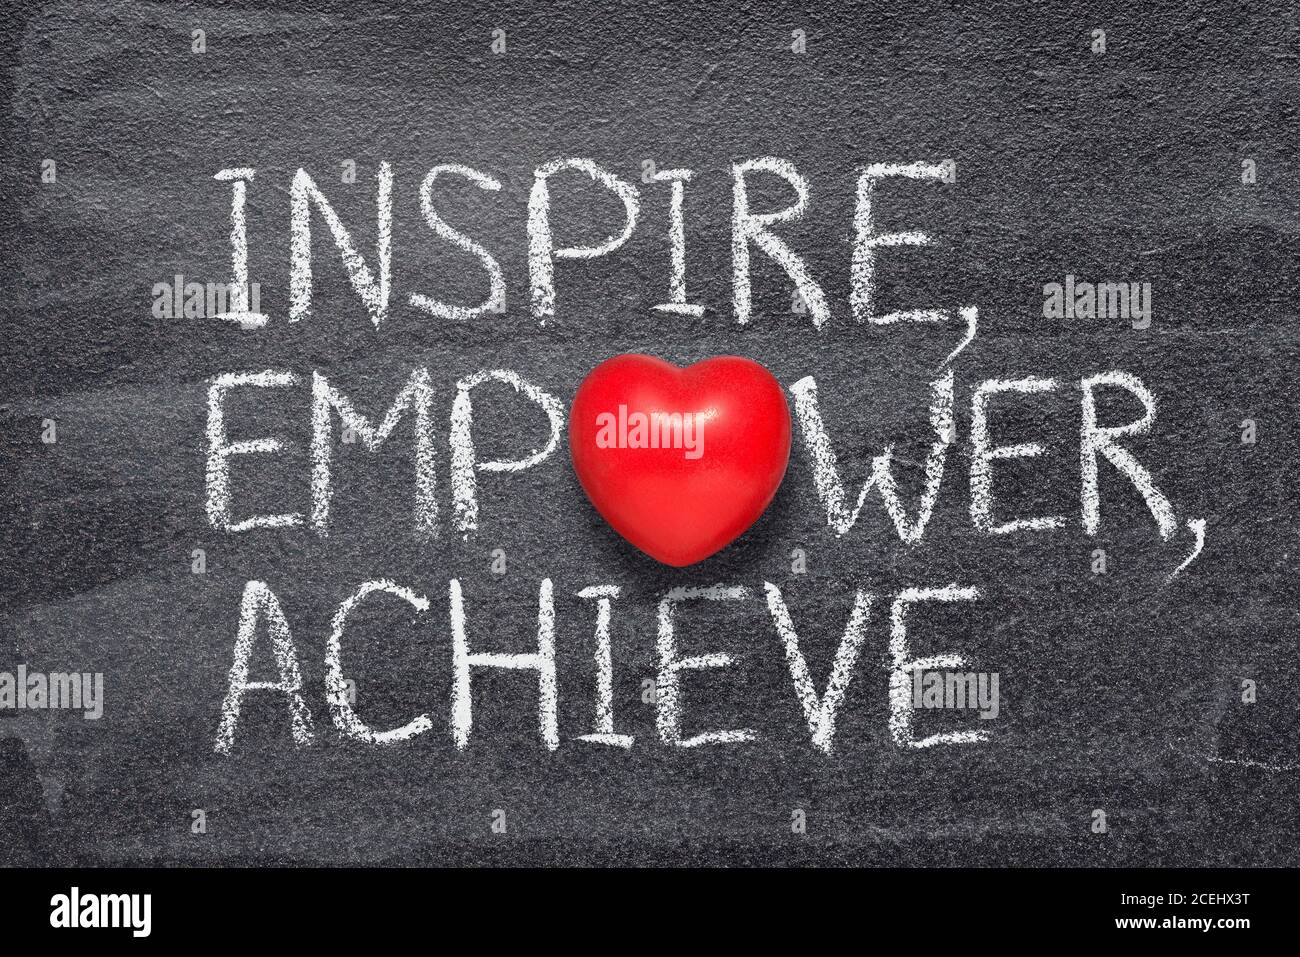 Inspirieren, stärken, erreichen Worte auf Kreidetafel mit rotem Herz Symbol geschrieben Stockfoto